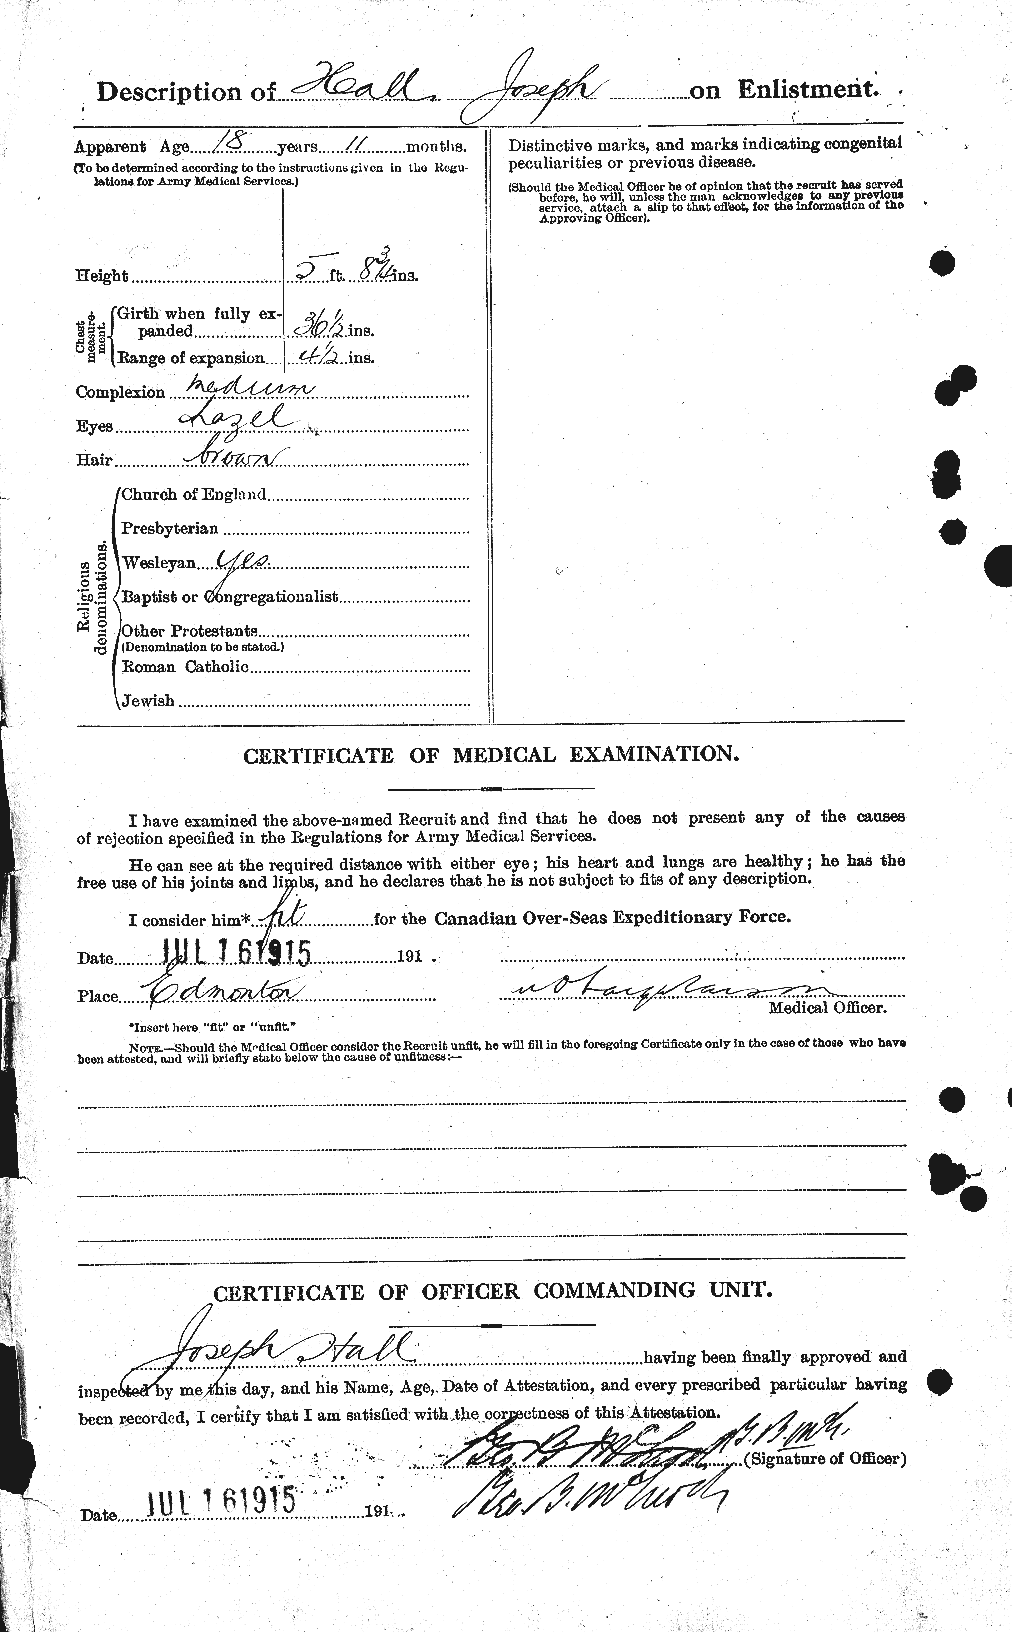 Dossiers du Personnel de la Première Guerre mondiale - CEC 369777b